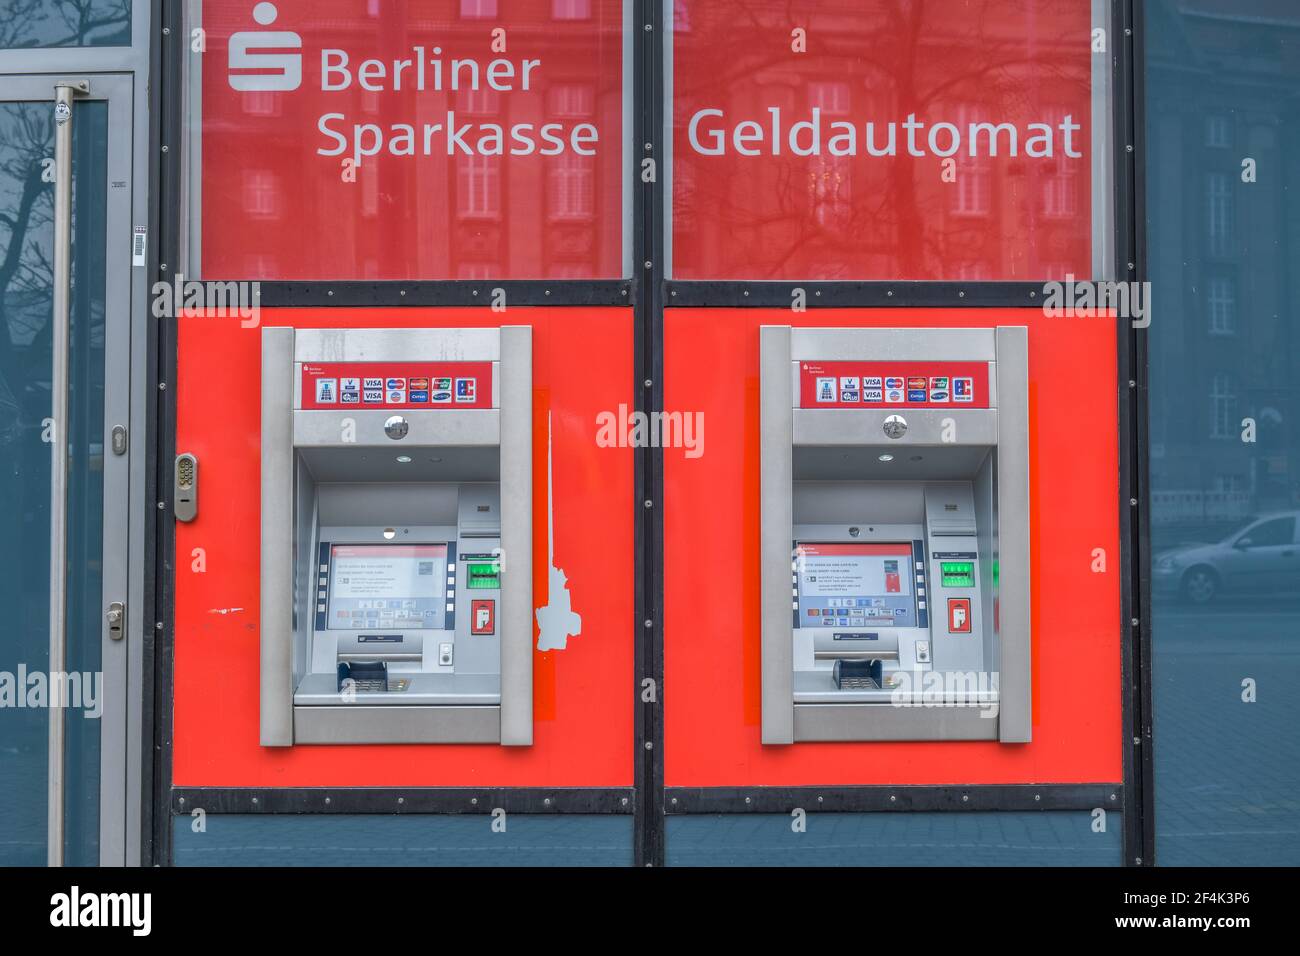 Geldautomat, Berliner Sparkasse Stock Photo